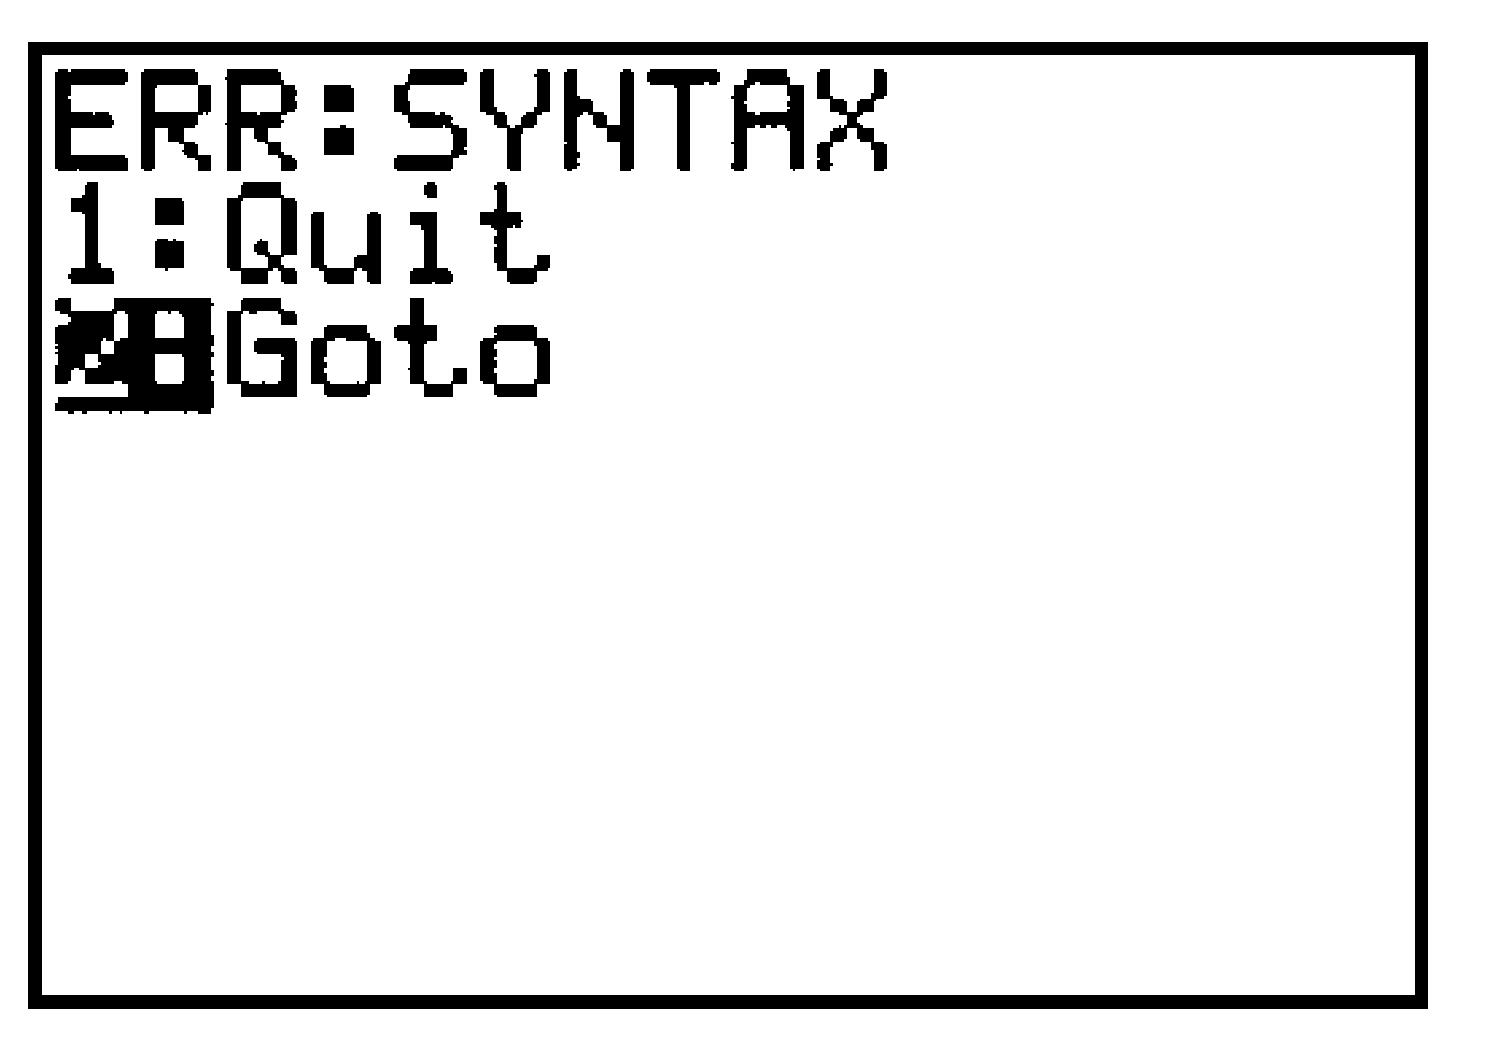 GC syntax error screen